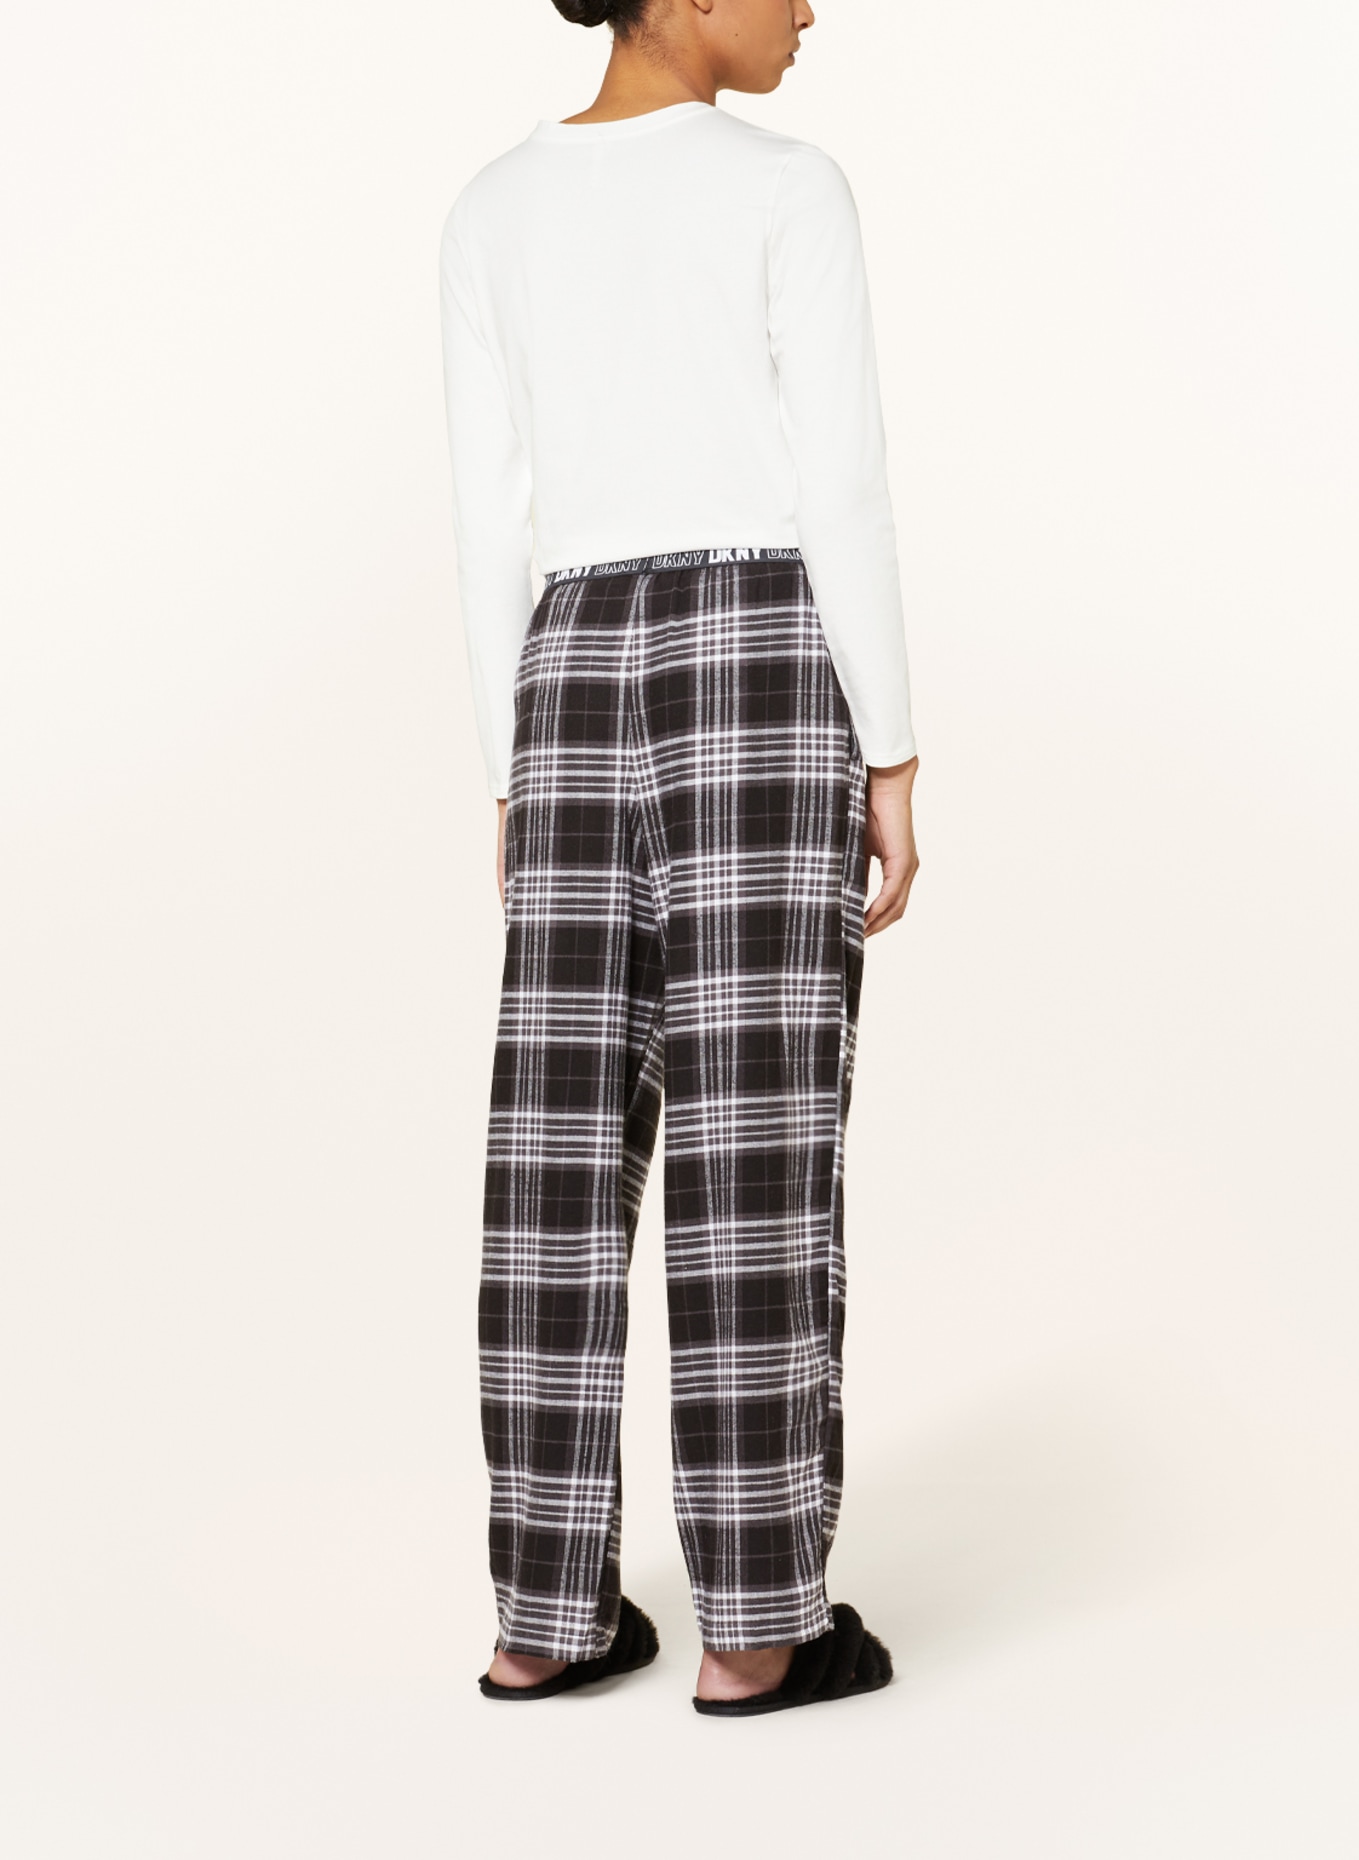 DKNY Pajama pants in flannel, Color: BLACK/ DARK GRAY/ WHITE (Image 3)